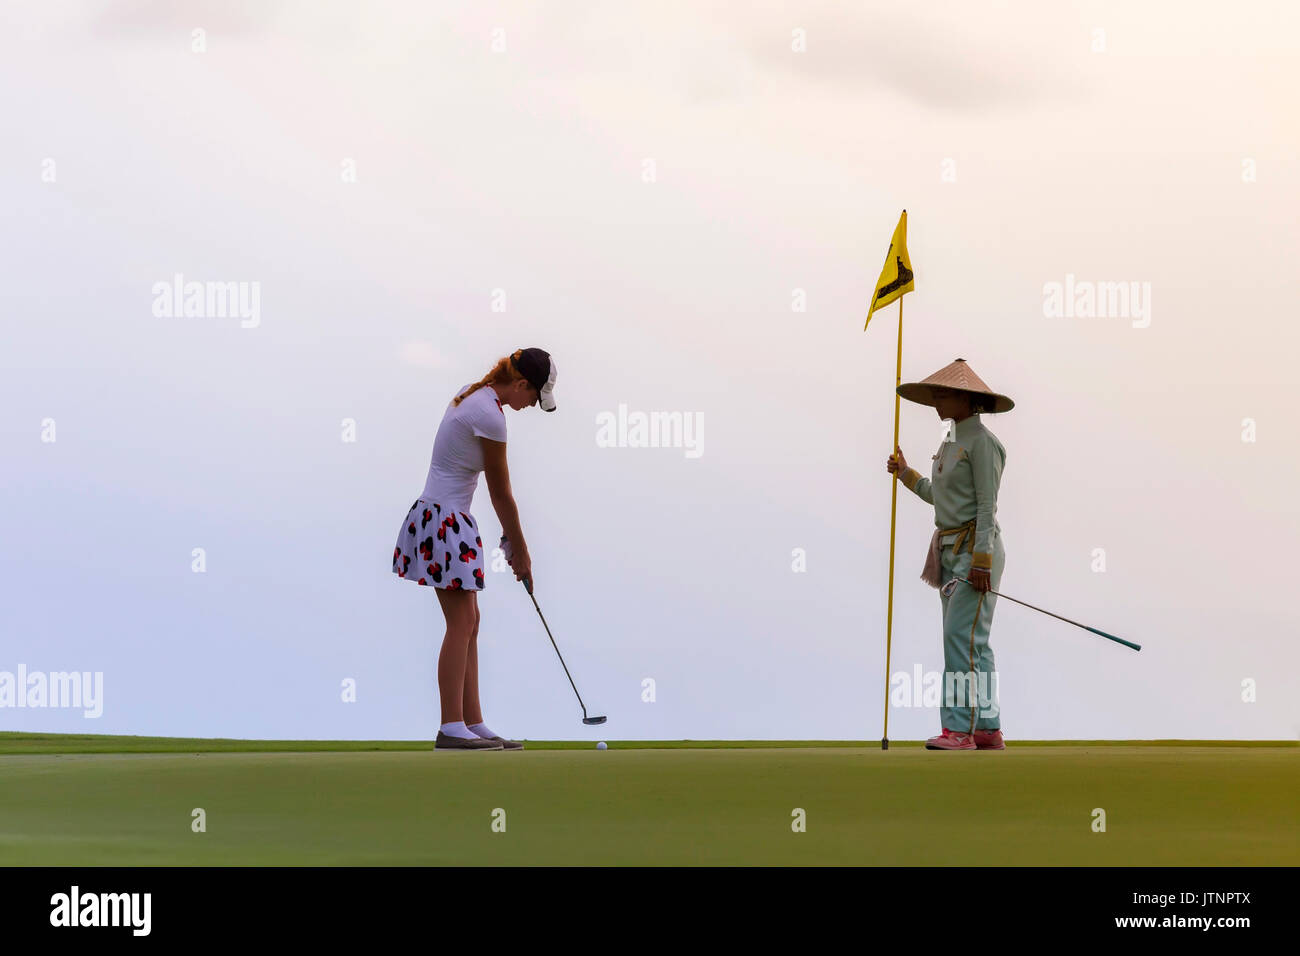 Golf Spieler und Caddy, Bali, Indonesien Stockfoto